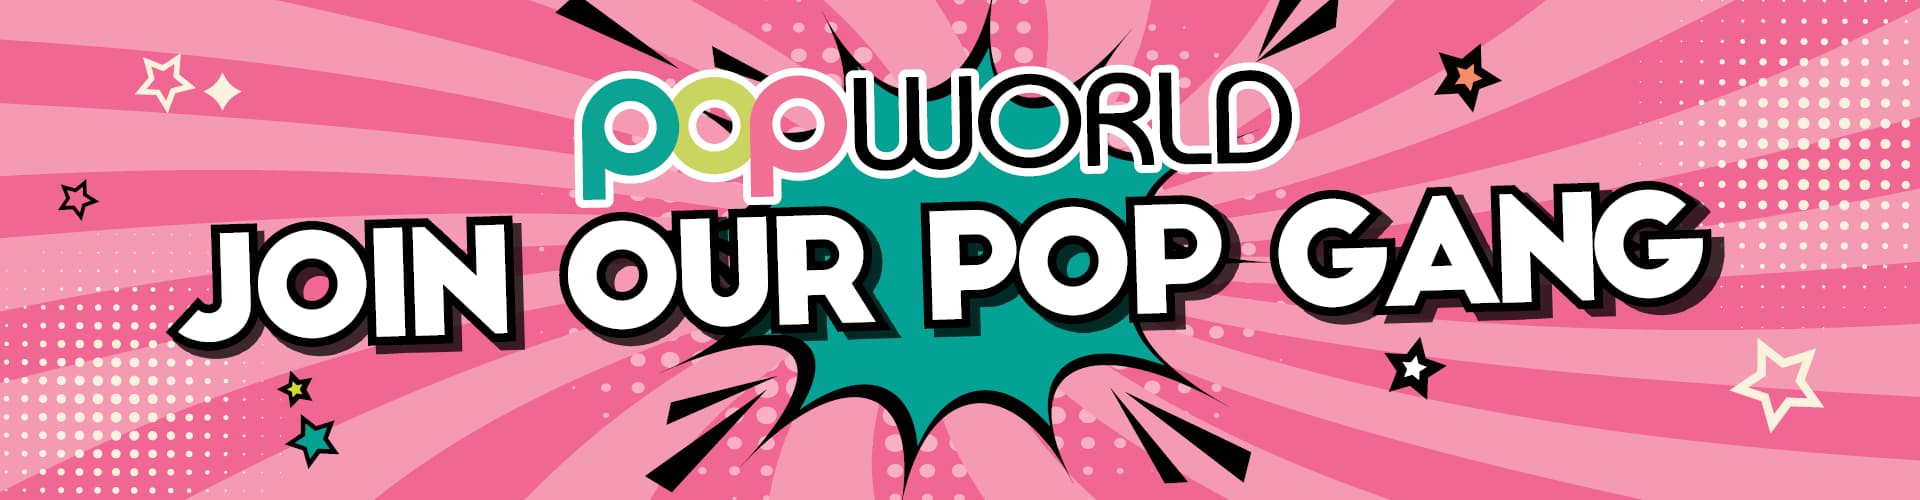 Popworld - Join the pop gang!